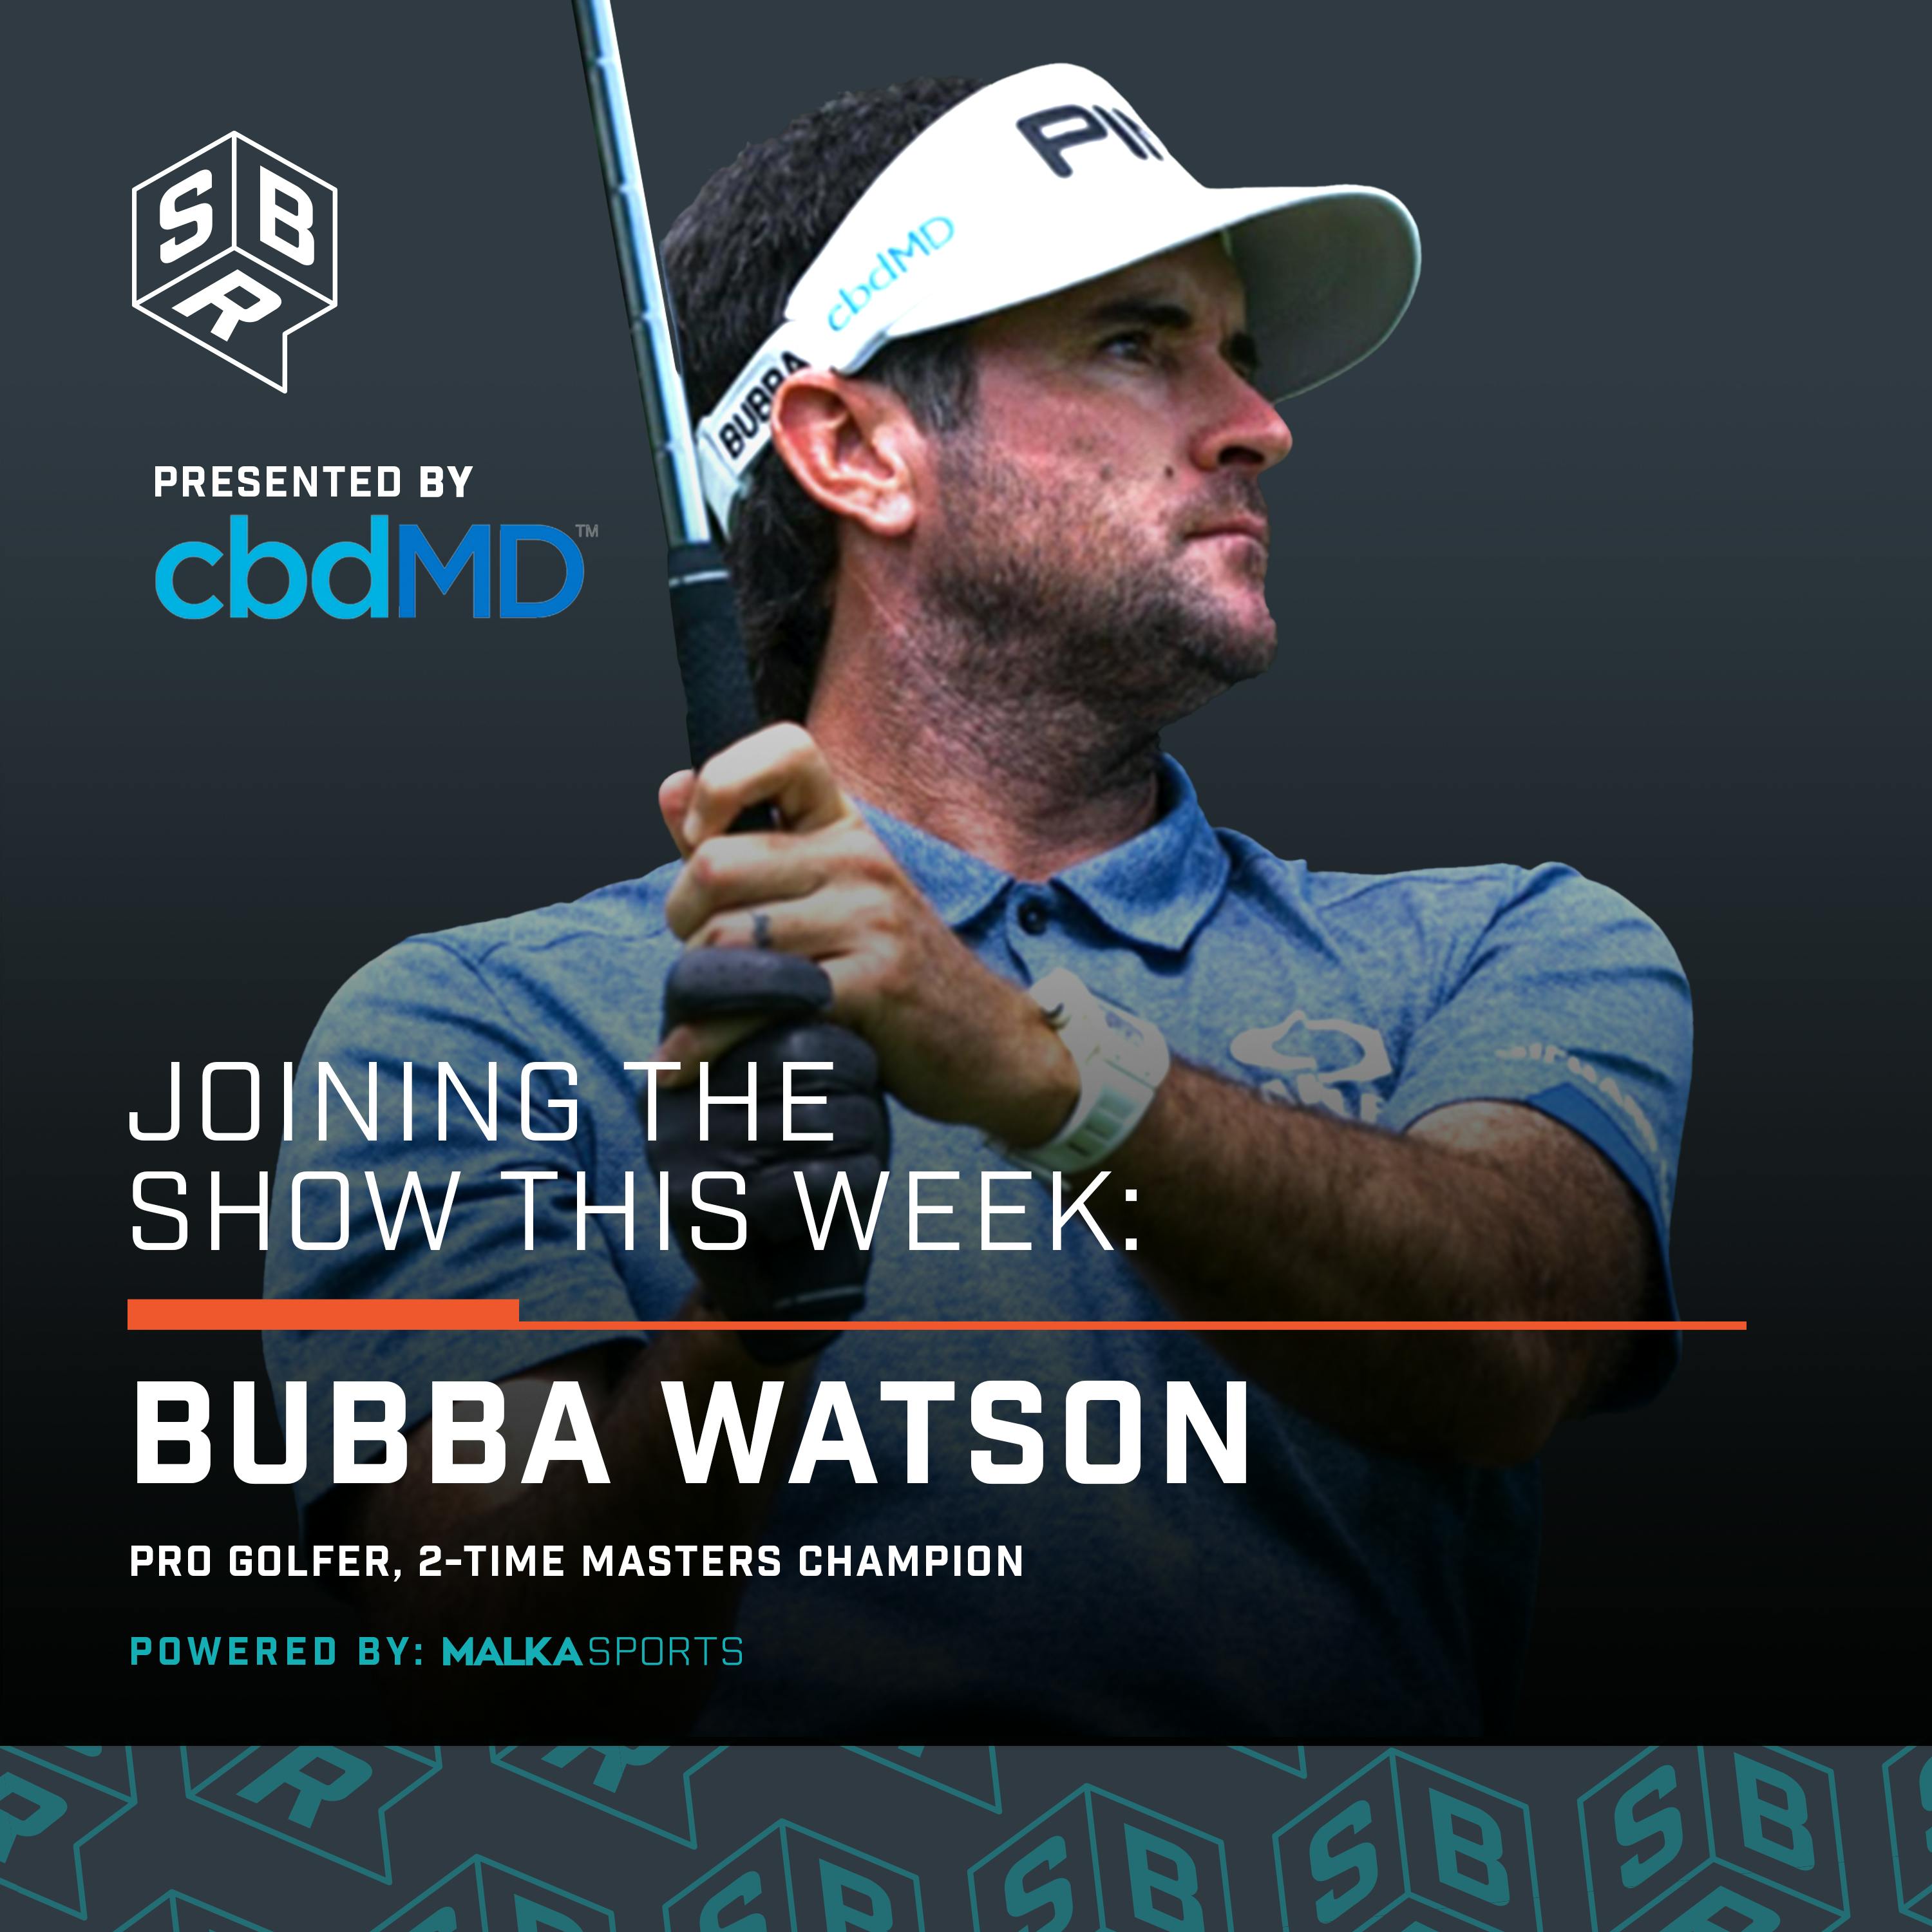 Bubba Watson - Pro Golfer, 2-Time Masters Champion